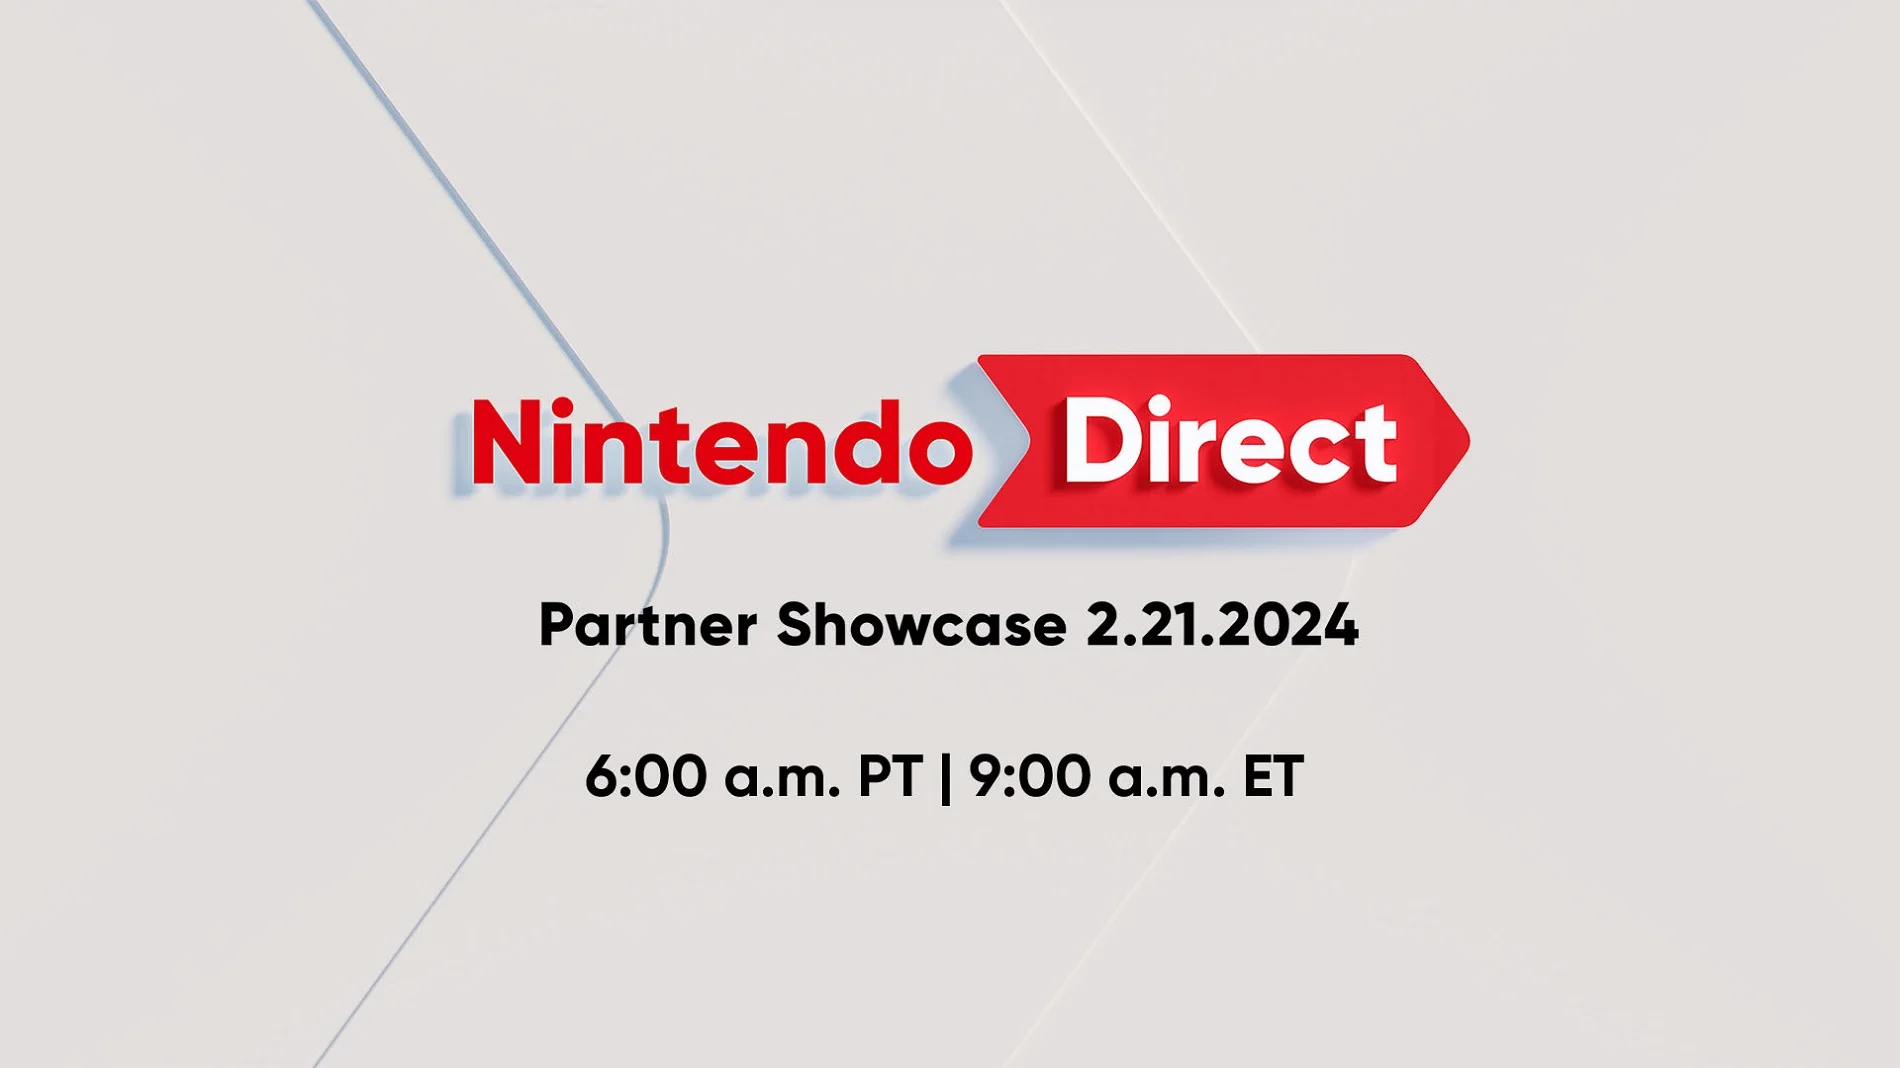 Очередная презентация Nintendo Direct Partner с играми для Switch пройдёт завтра - фото 1